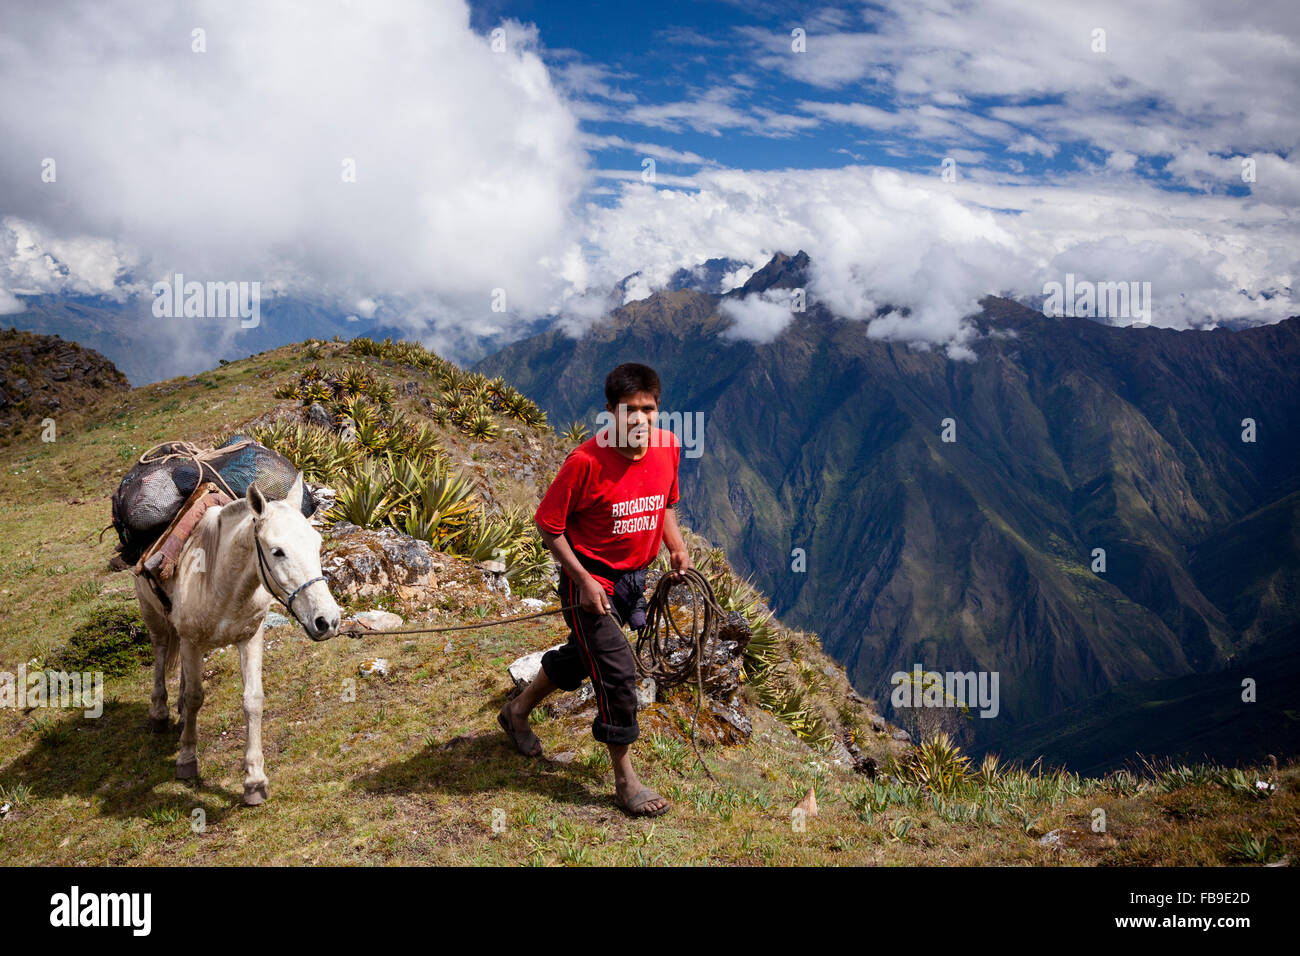 Arriero (Mule Skinner) und Pack-Mule gehen über einen hohen Pass auf der Spur, Peru Choquequirao (Cradle of Gold). Stockfoto